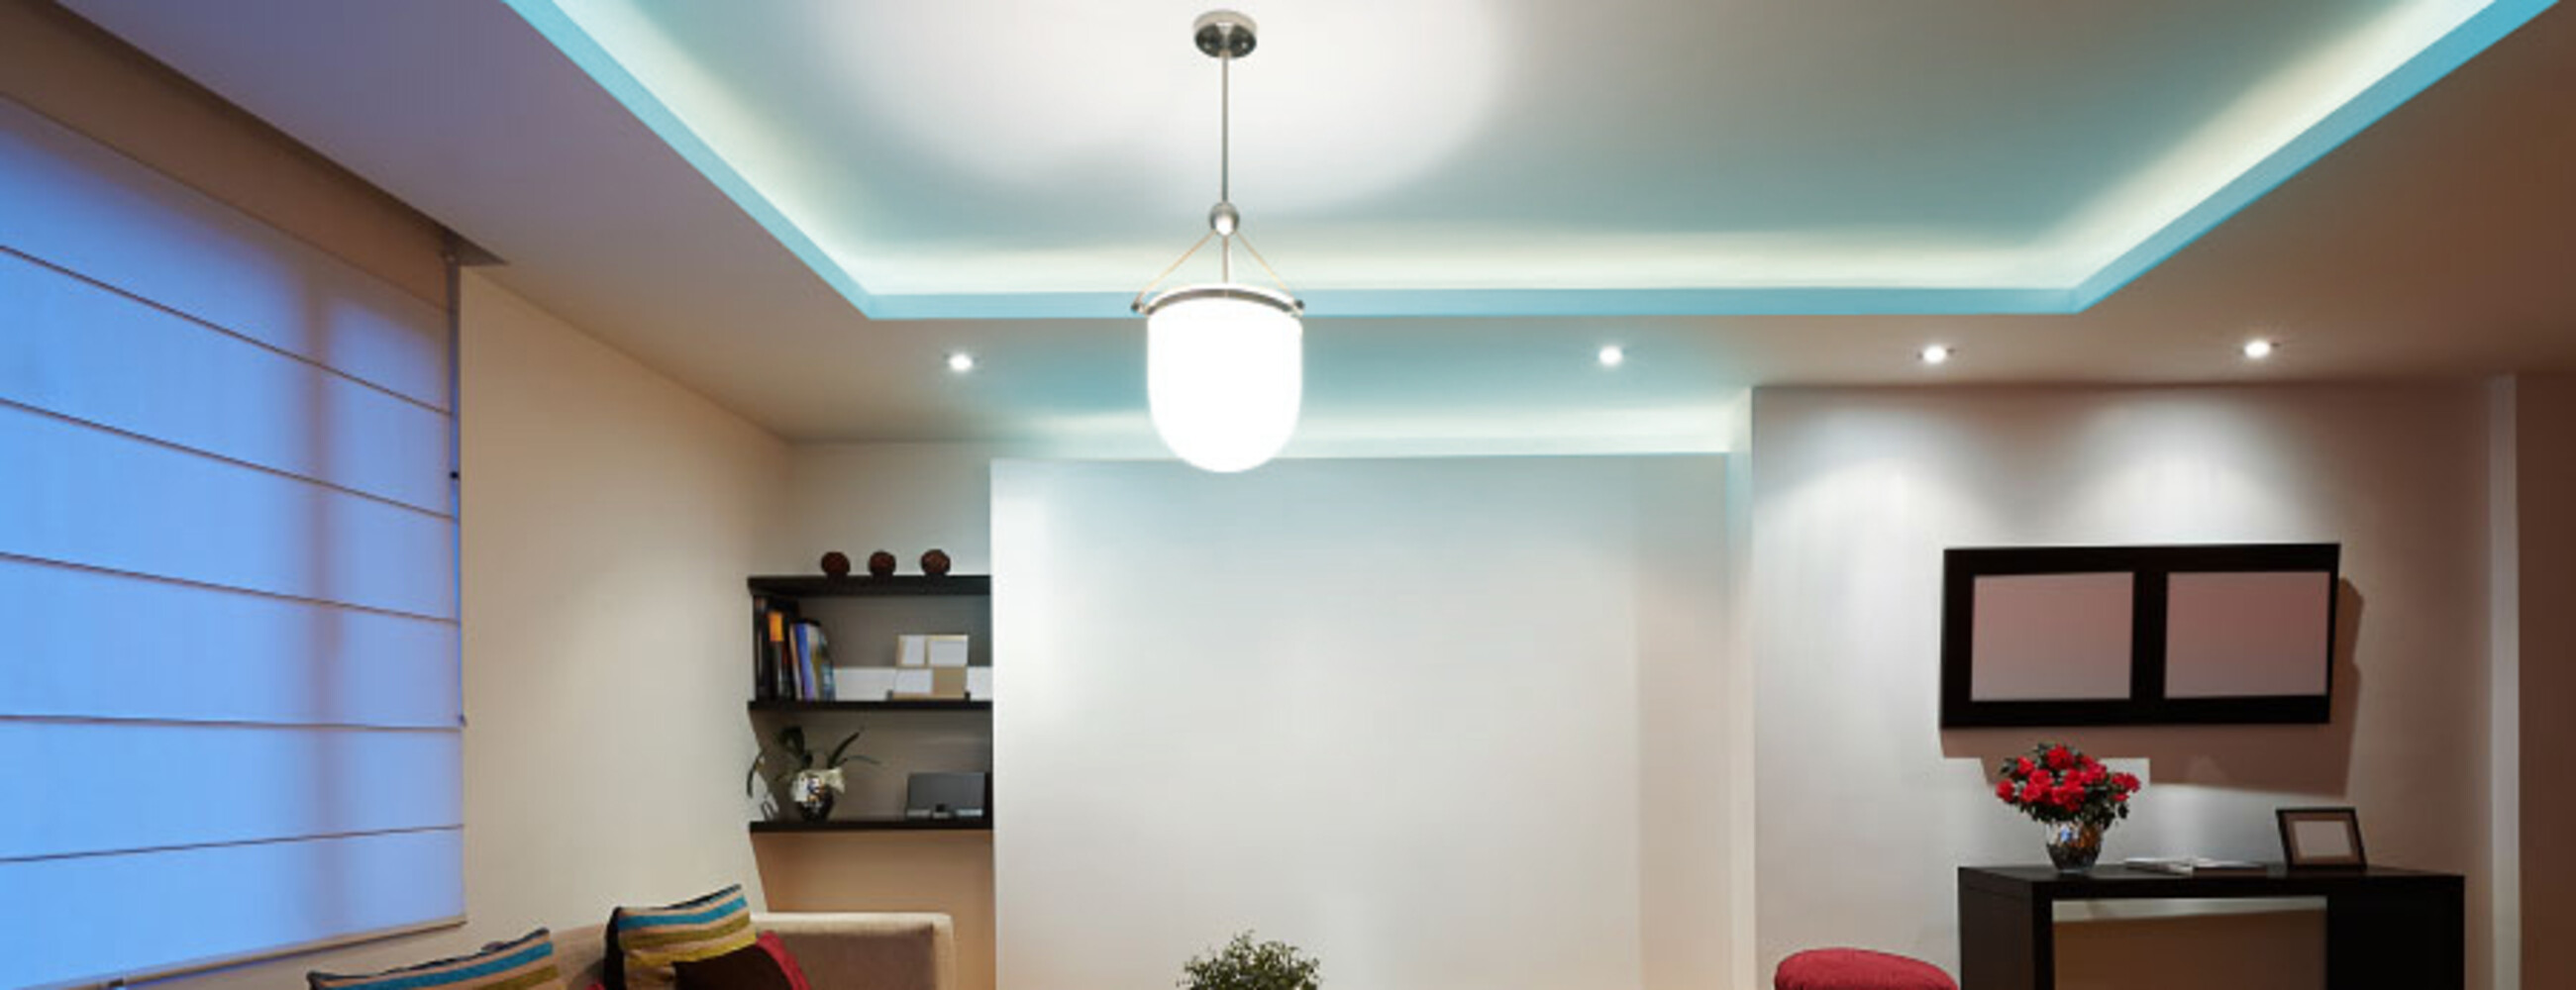 Hochwertiger, langlebiger LED Streifen von der renommierten Marke LED Universum, der Ihr Zuhause in einem stimmungsvollen Licht erstrahlen lässt